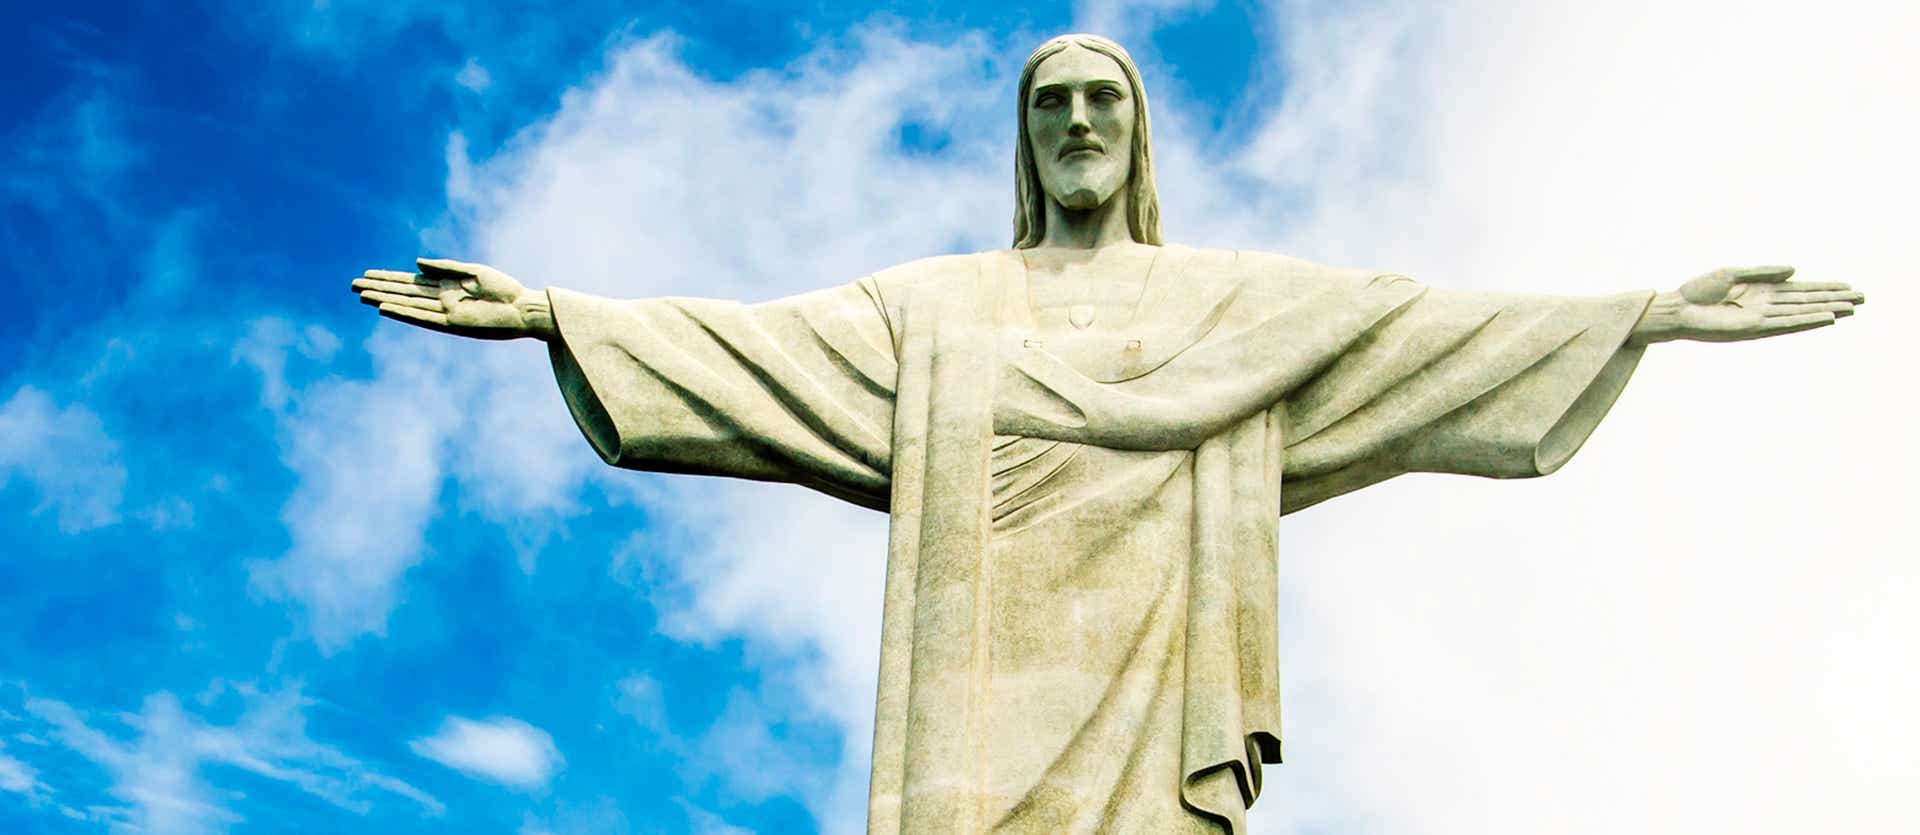 Cristo Redentor <span class="iconos separador"></span>  Río de Janeiro <span class="iconos separador"></span> Brasil